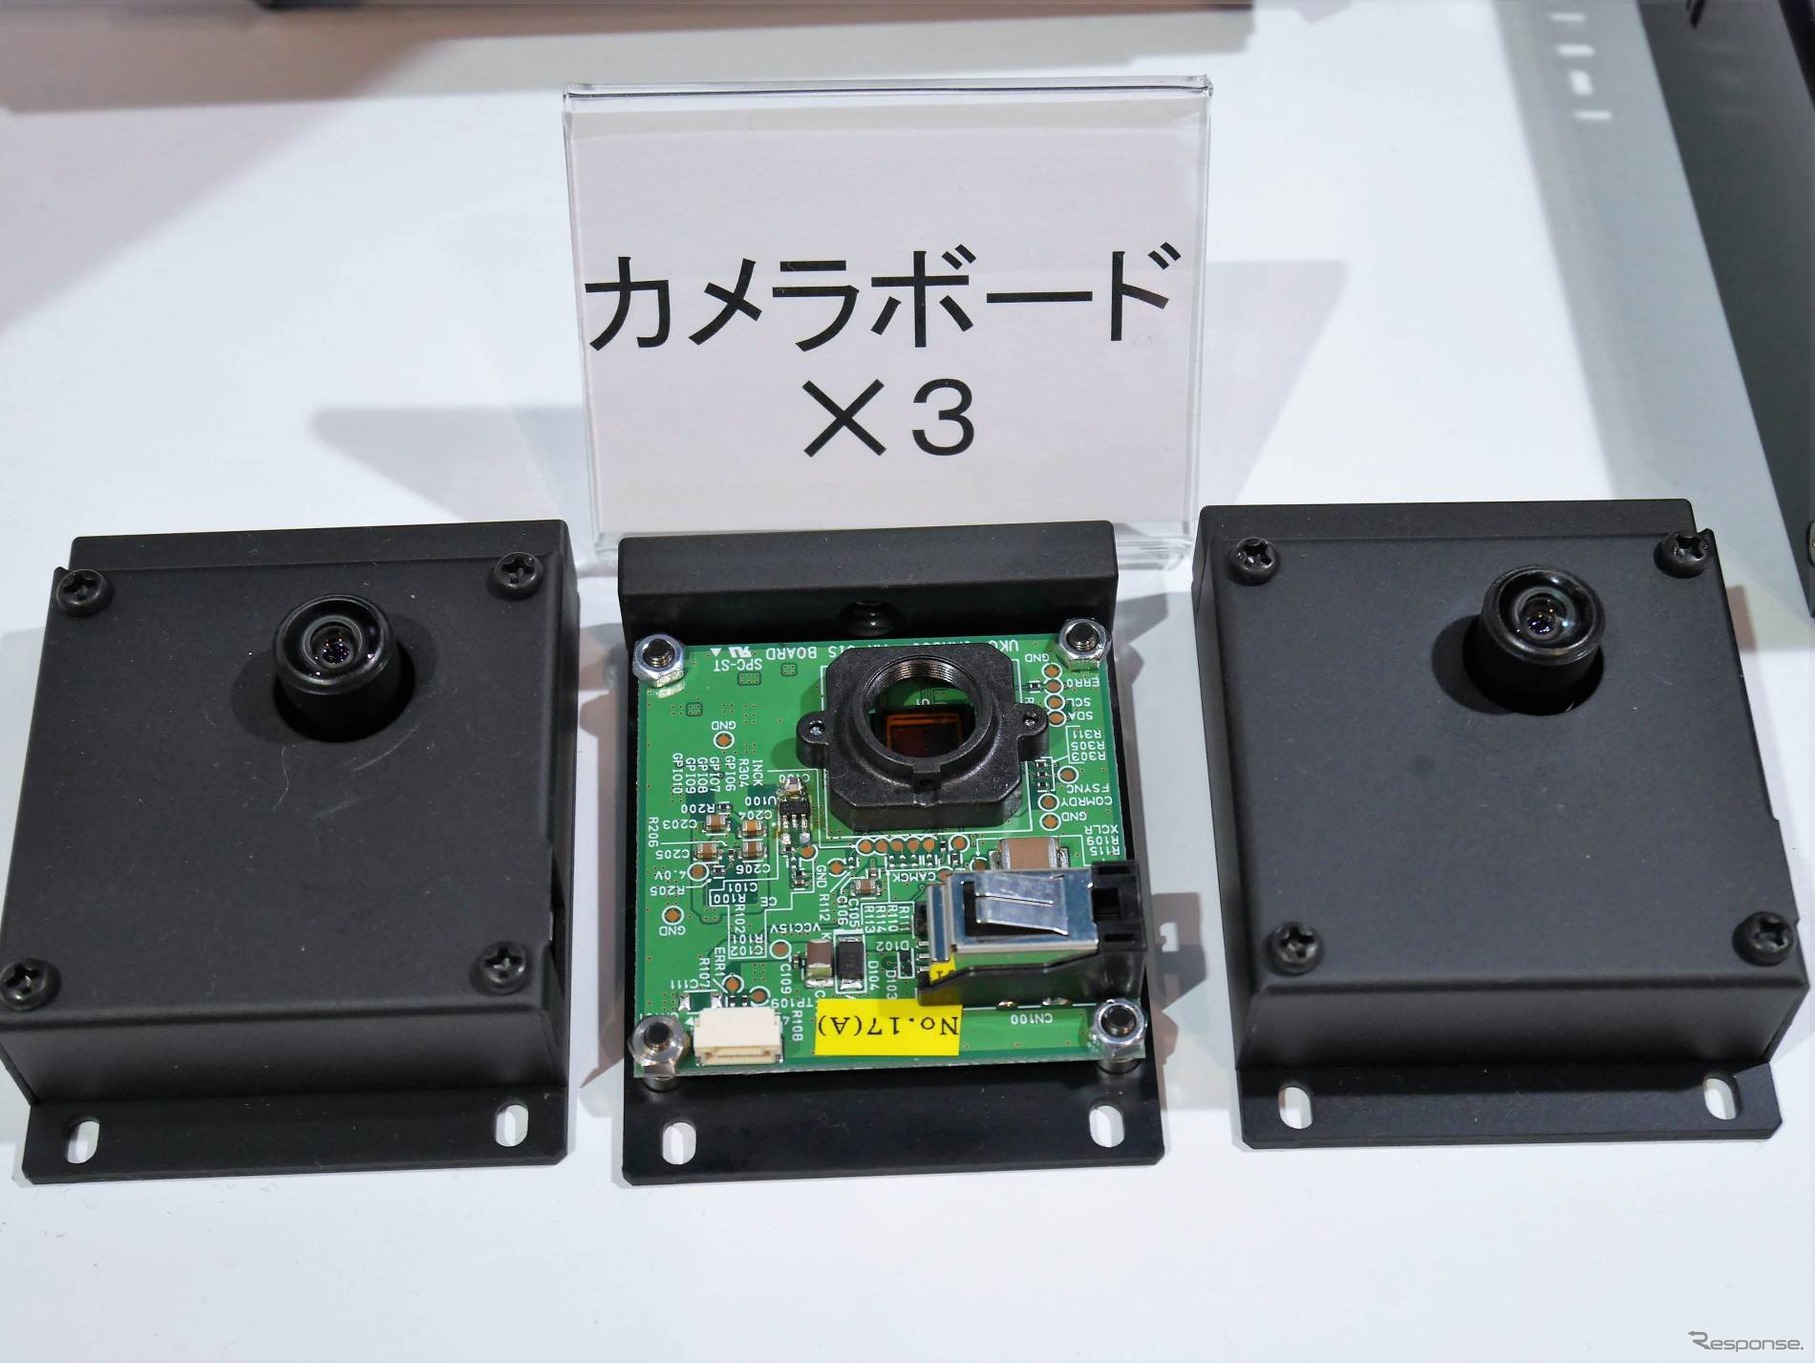 カメラボード。展示品においてはバックと左右で3台の組み合わせ。ソニーの車載用CMOS「IMX390」を搭載する